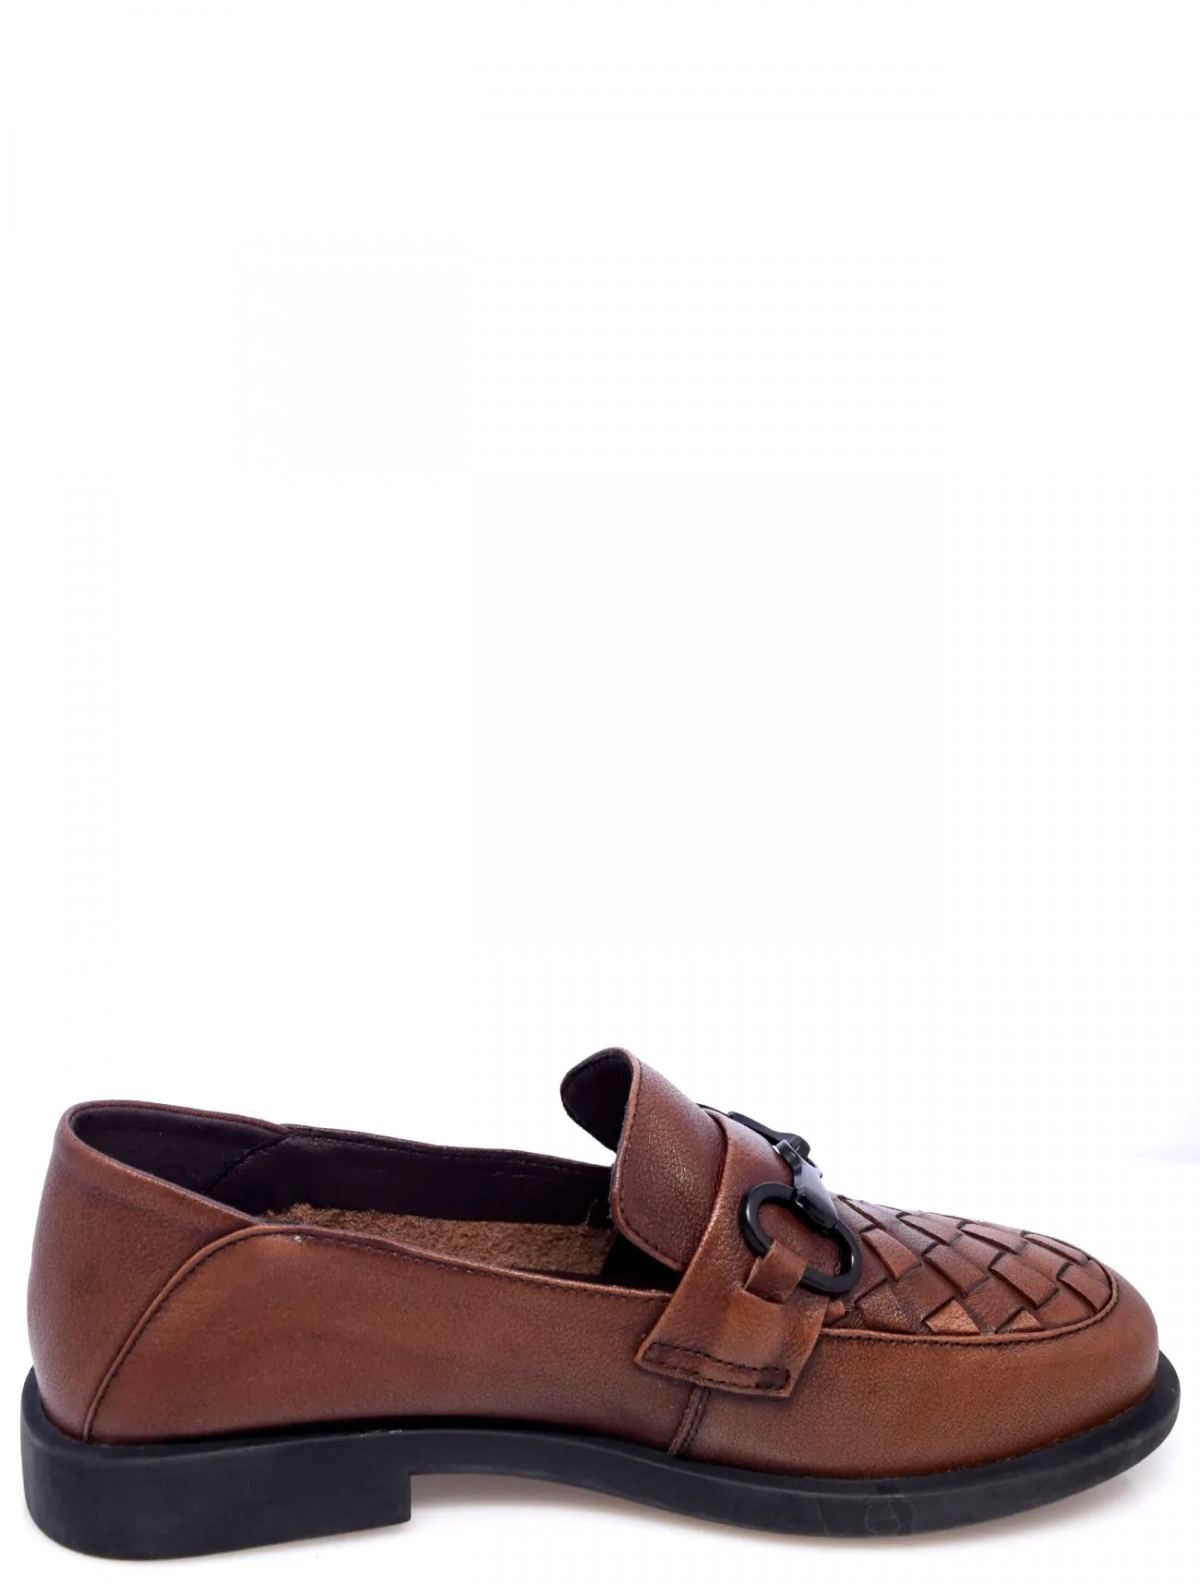 Bonavi 21R6-03-103 женские туфли